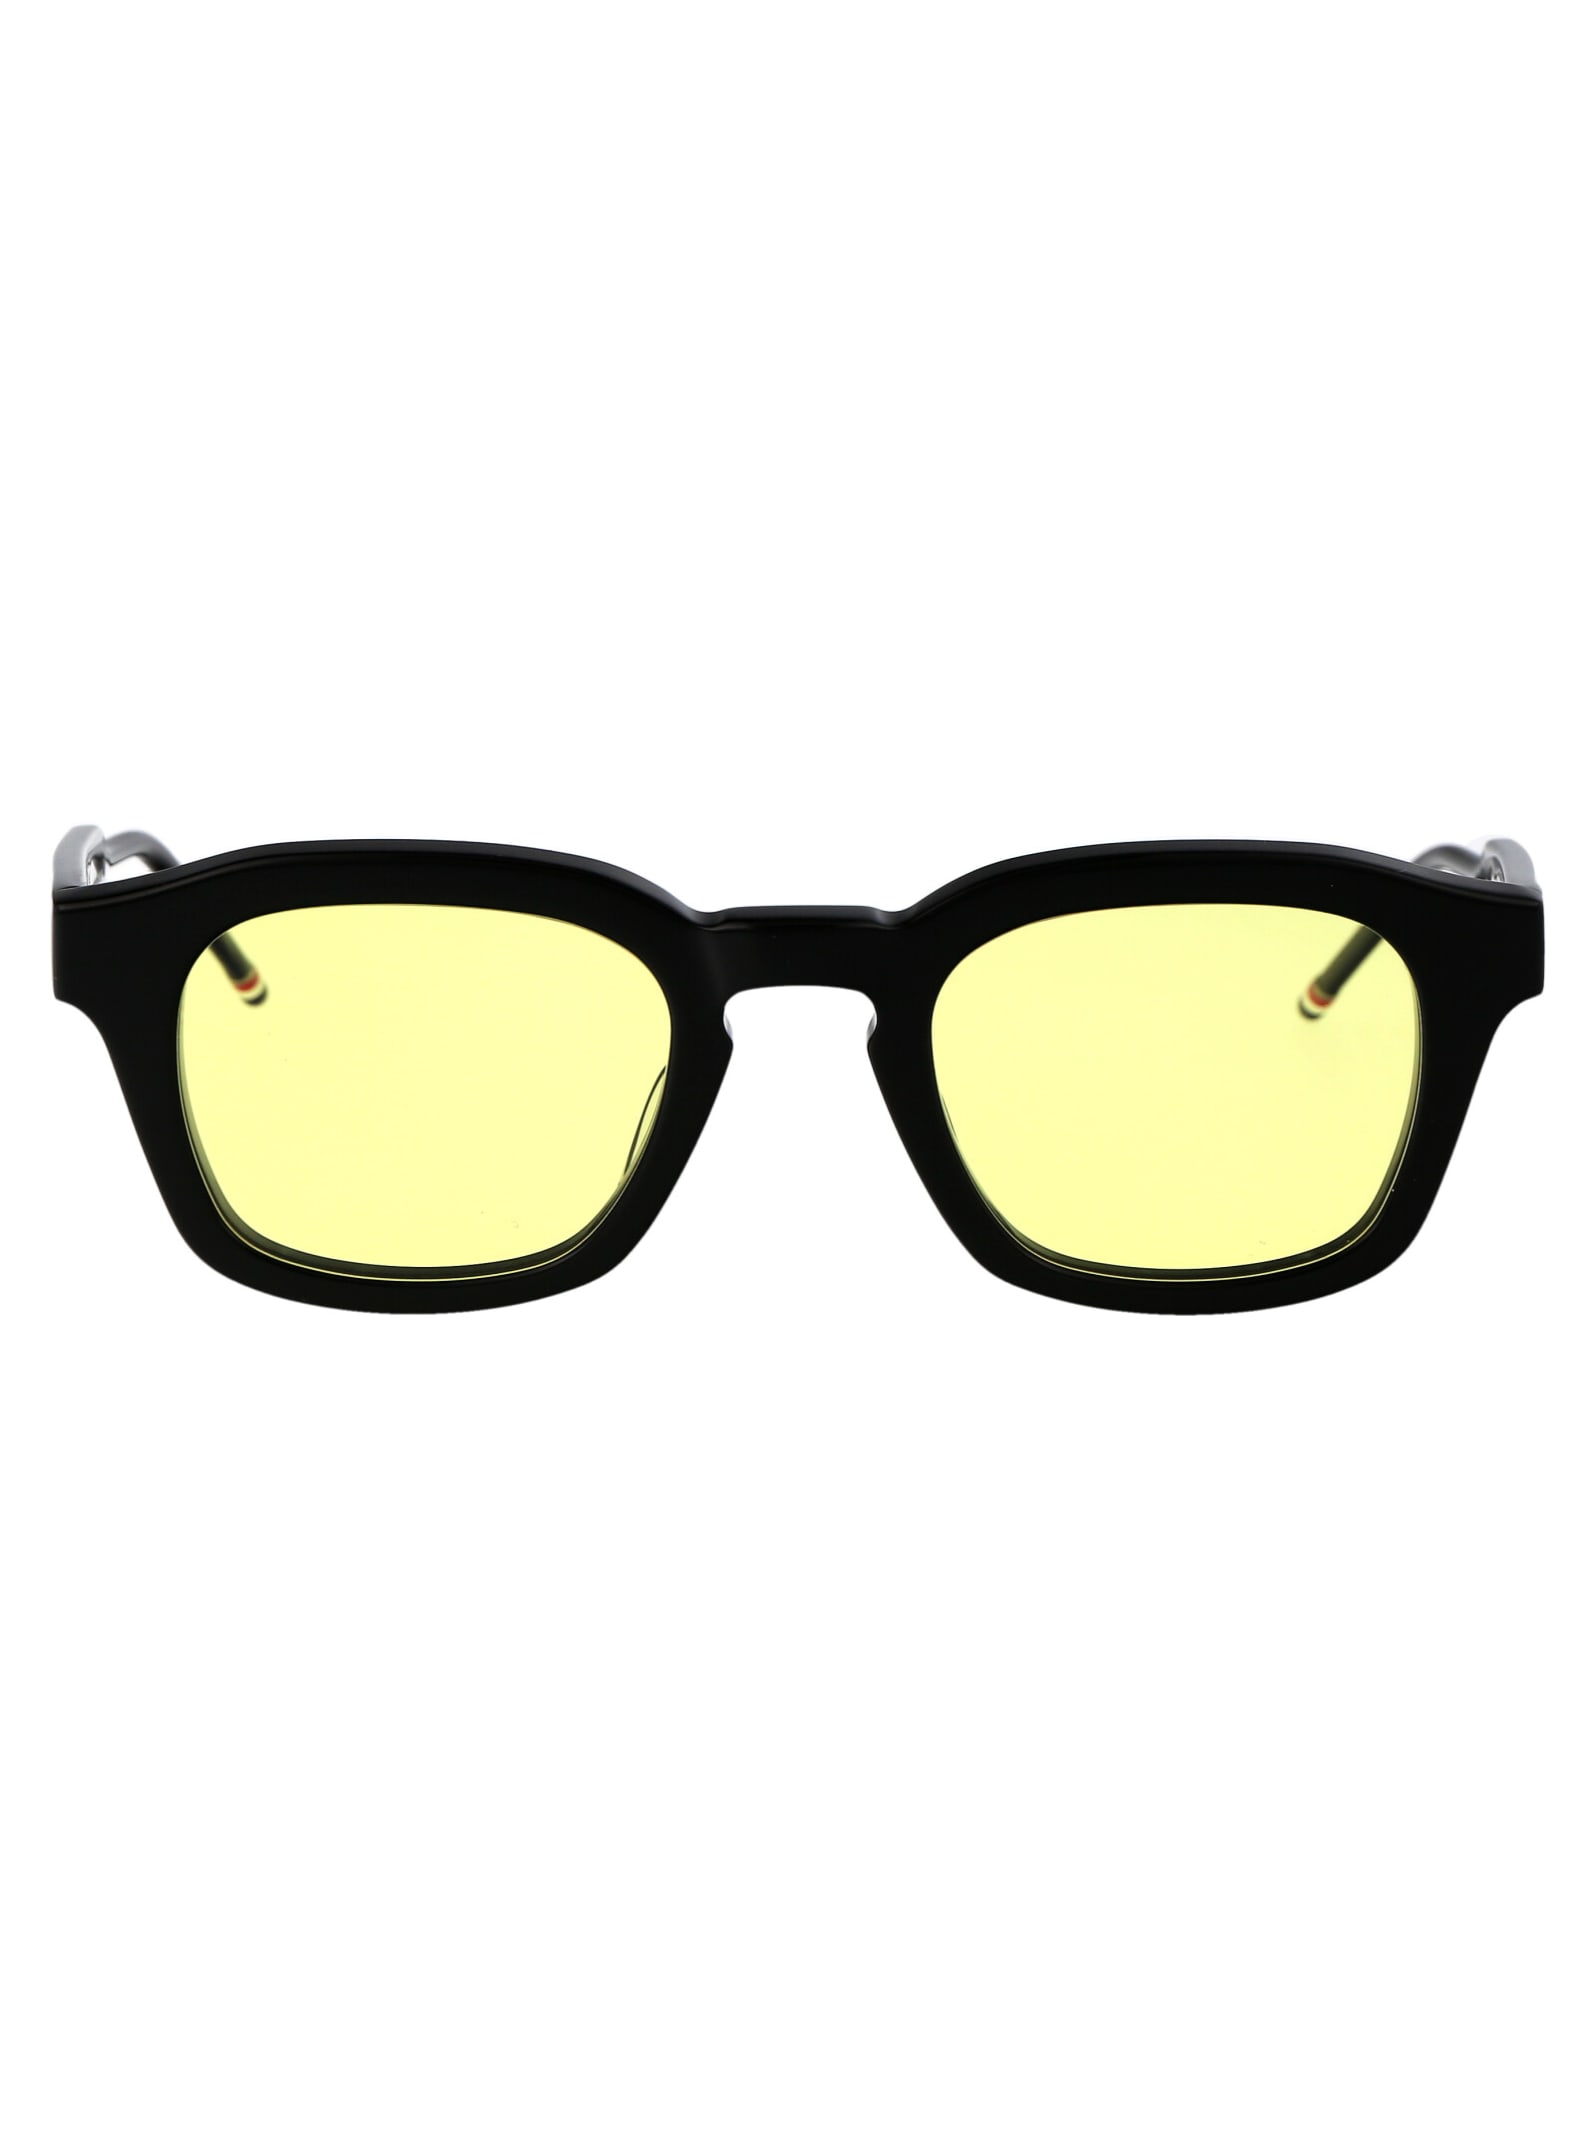 Ues412c-g0002-001-48 Sunglasses